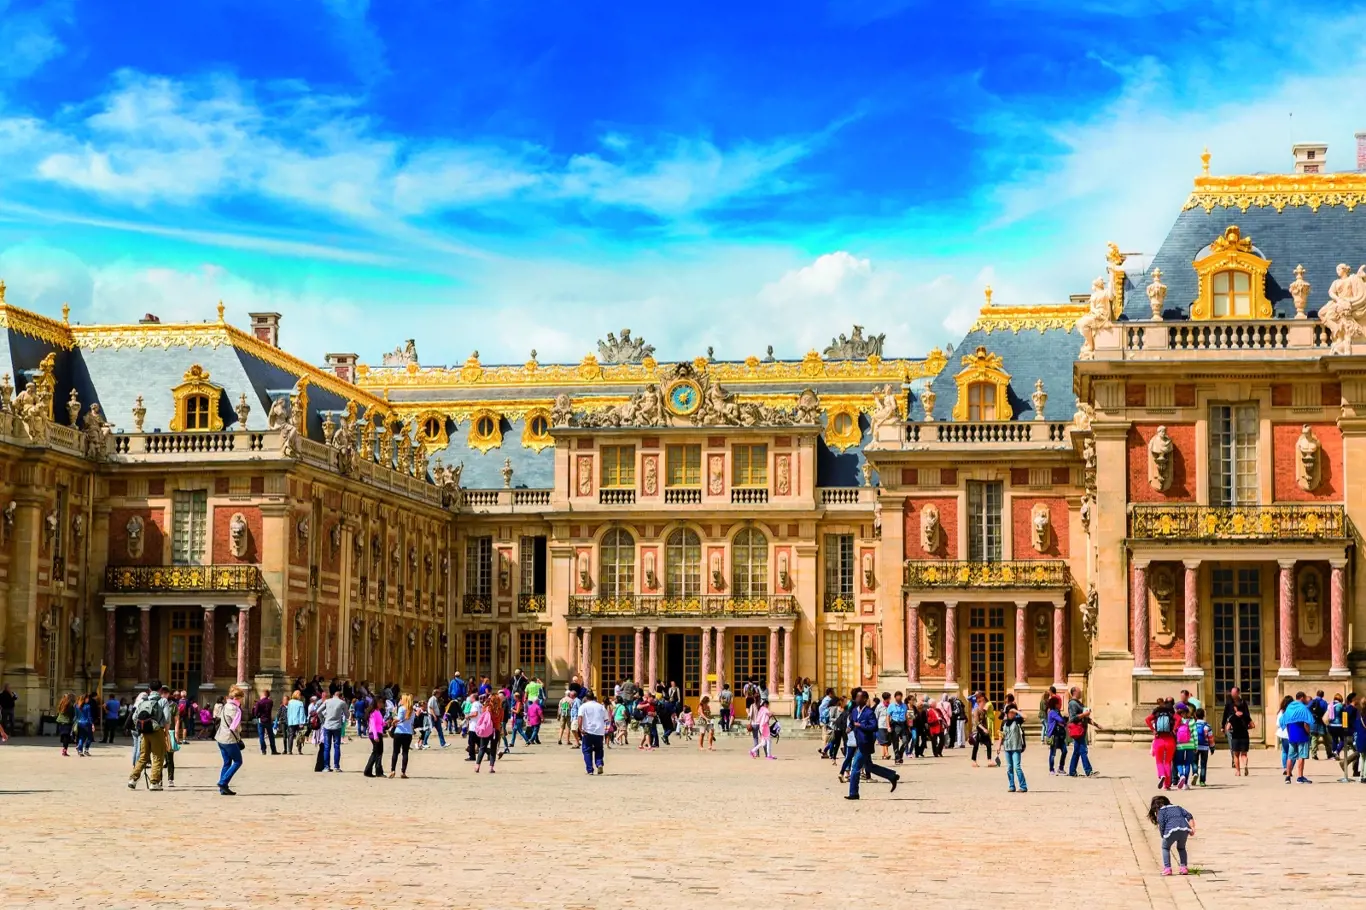 Co zažily dvě ženy ve Versailles?